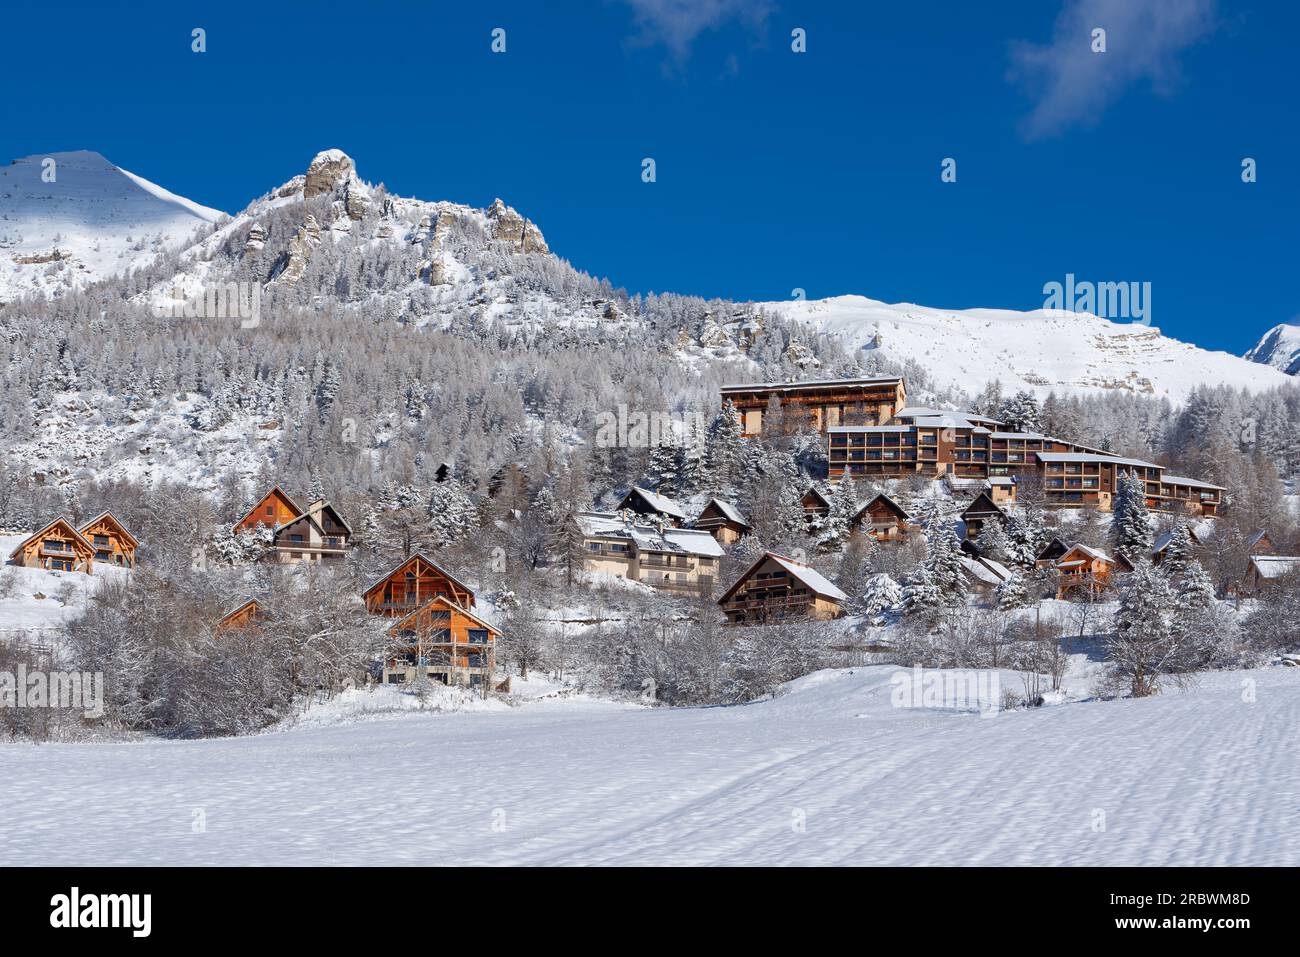 Chaillol 1600 station de ski et chalets dans le Parc National des Ecrins (région du Champsaur) en hiver. Neige dans Hautes-Alpes (Alpes), France Banque D'Images